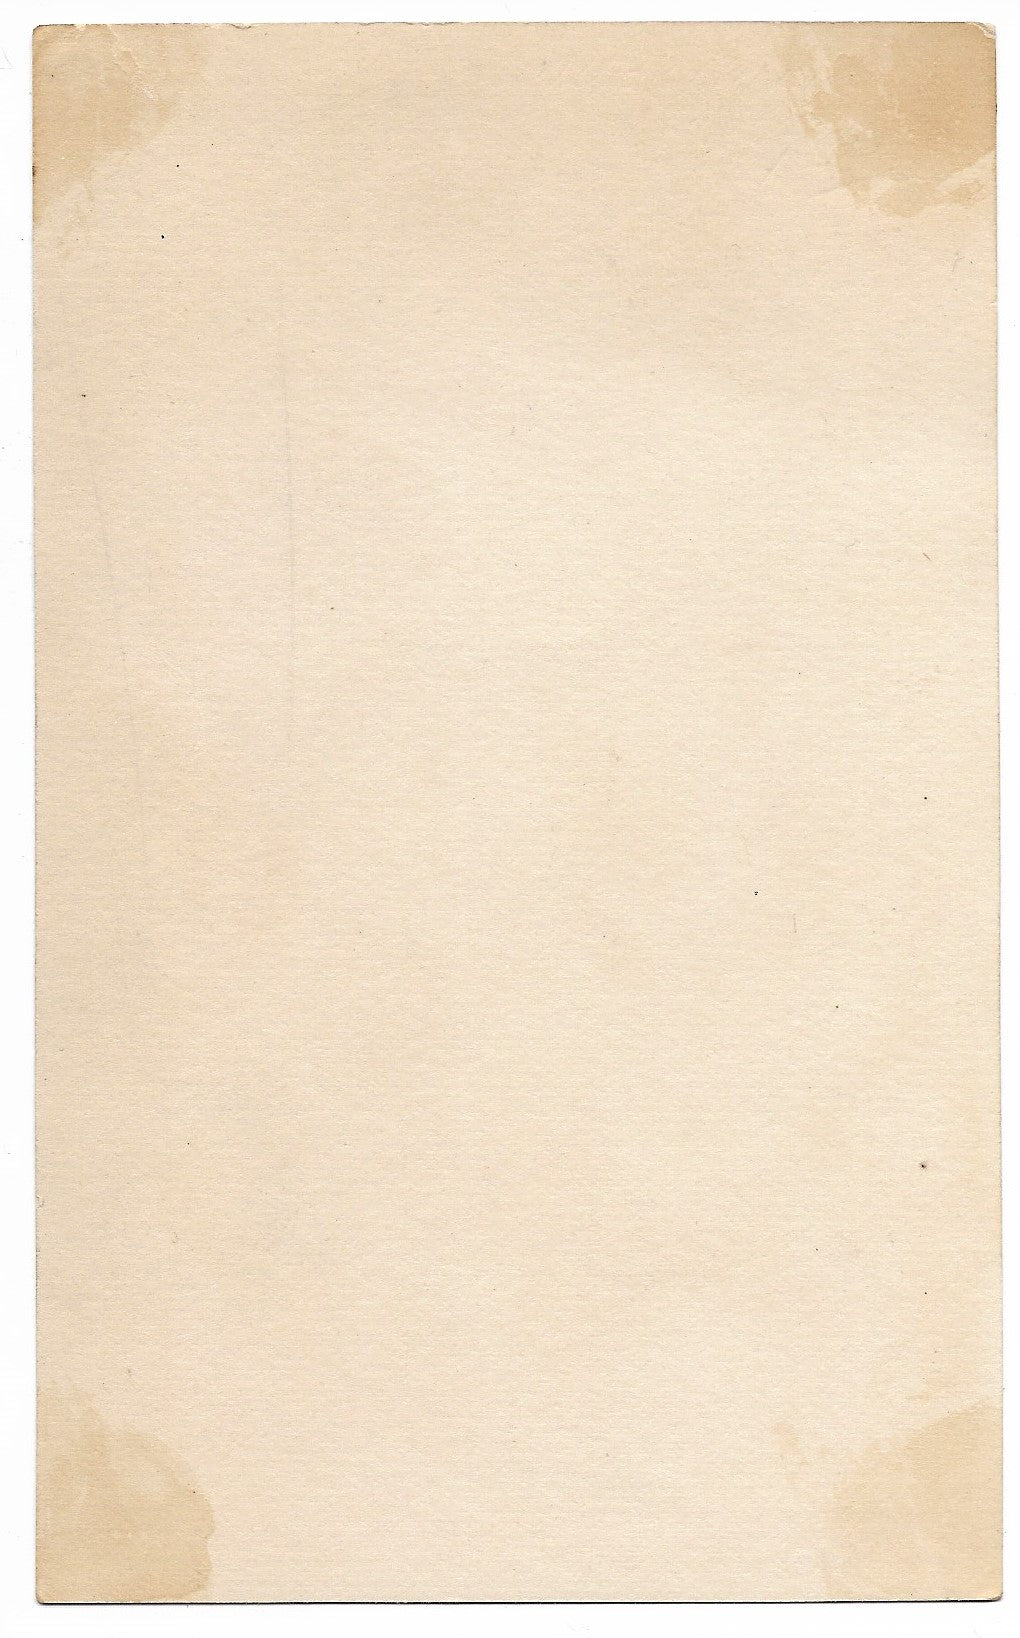 NIagara Starch Antique Trade Card, Buffalo, NY - 3" x 5.25"